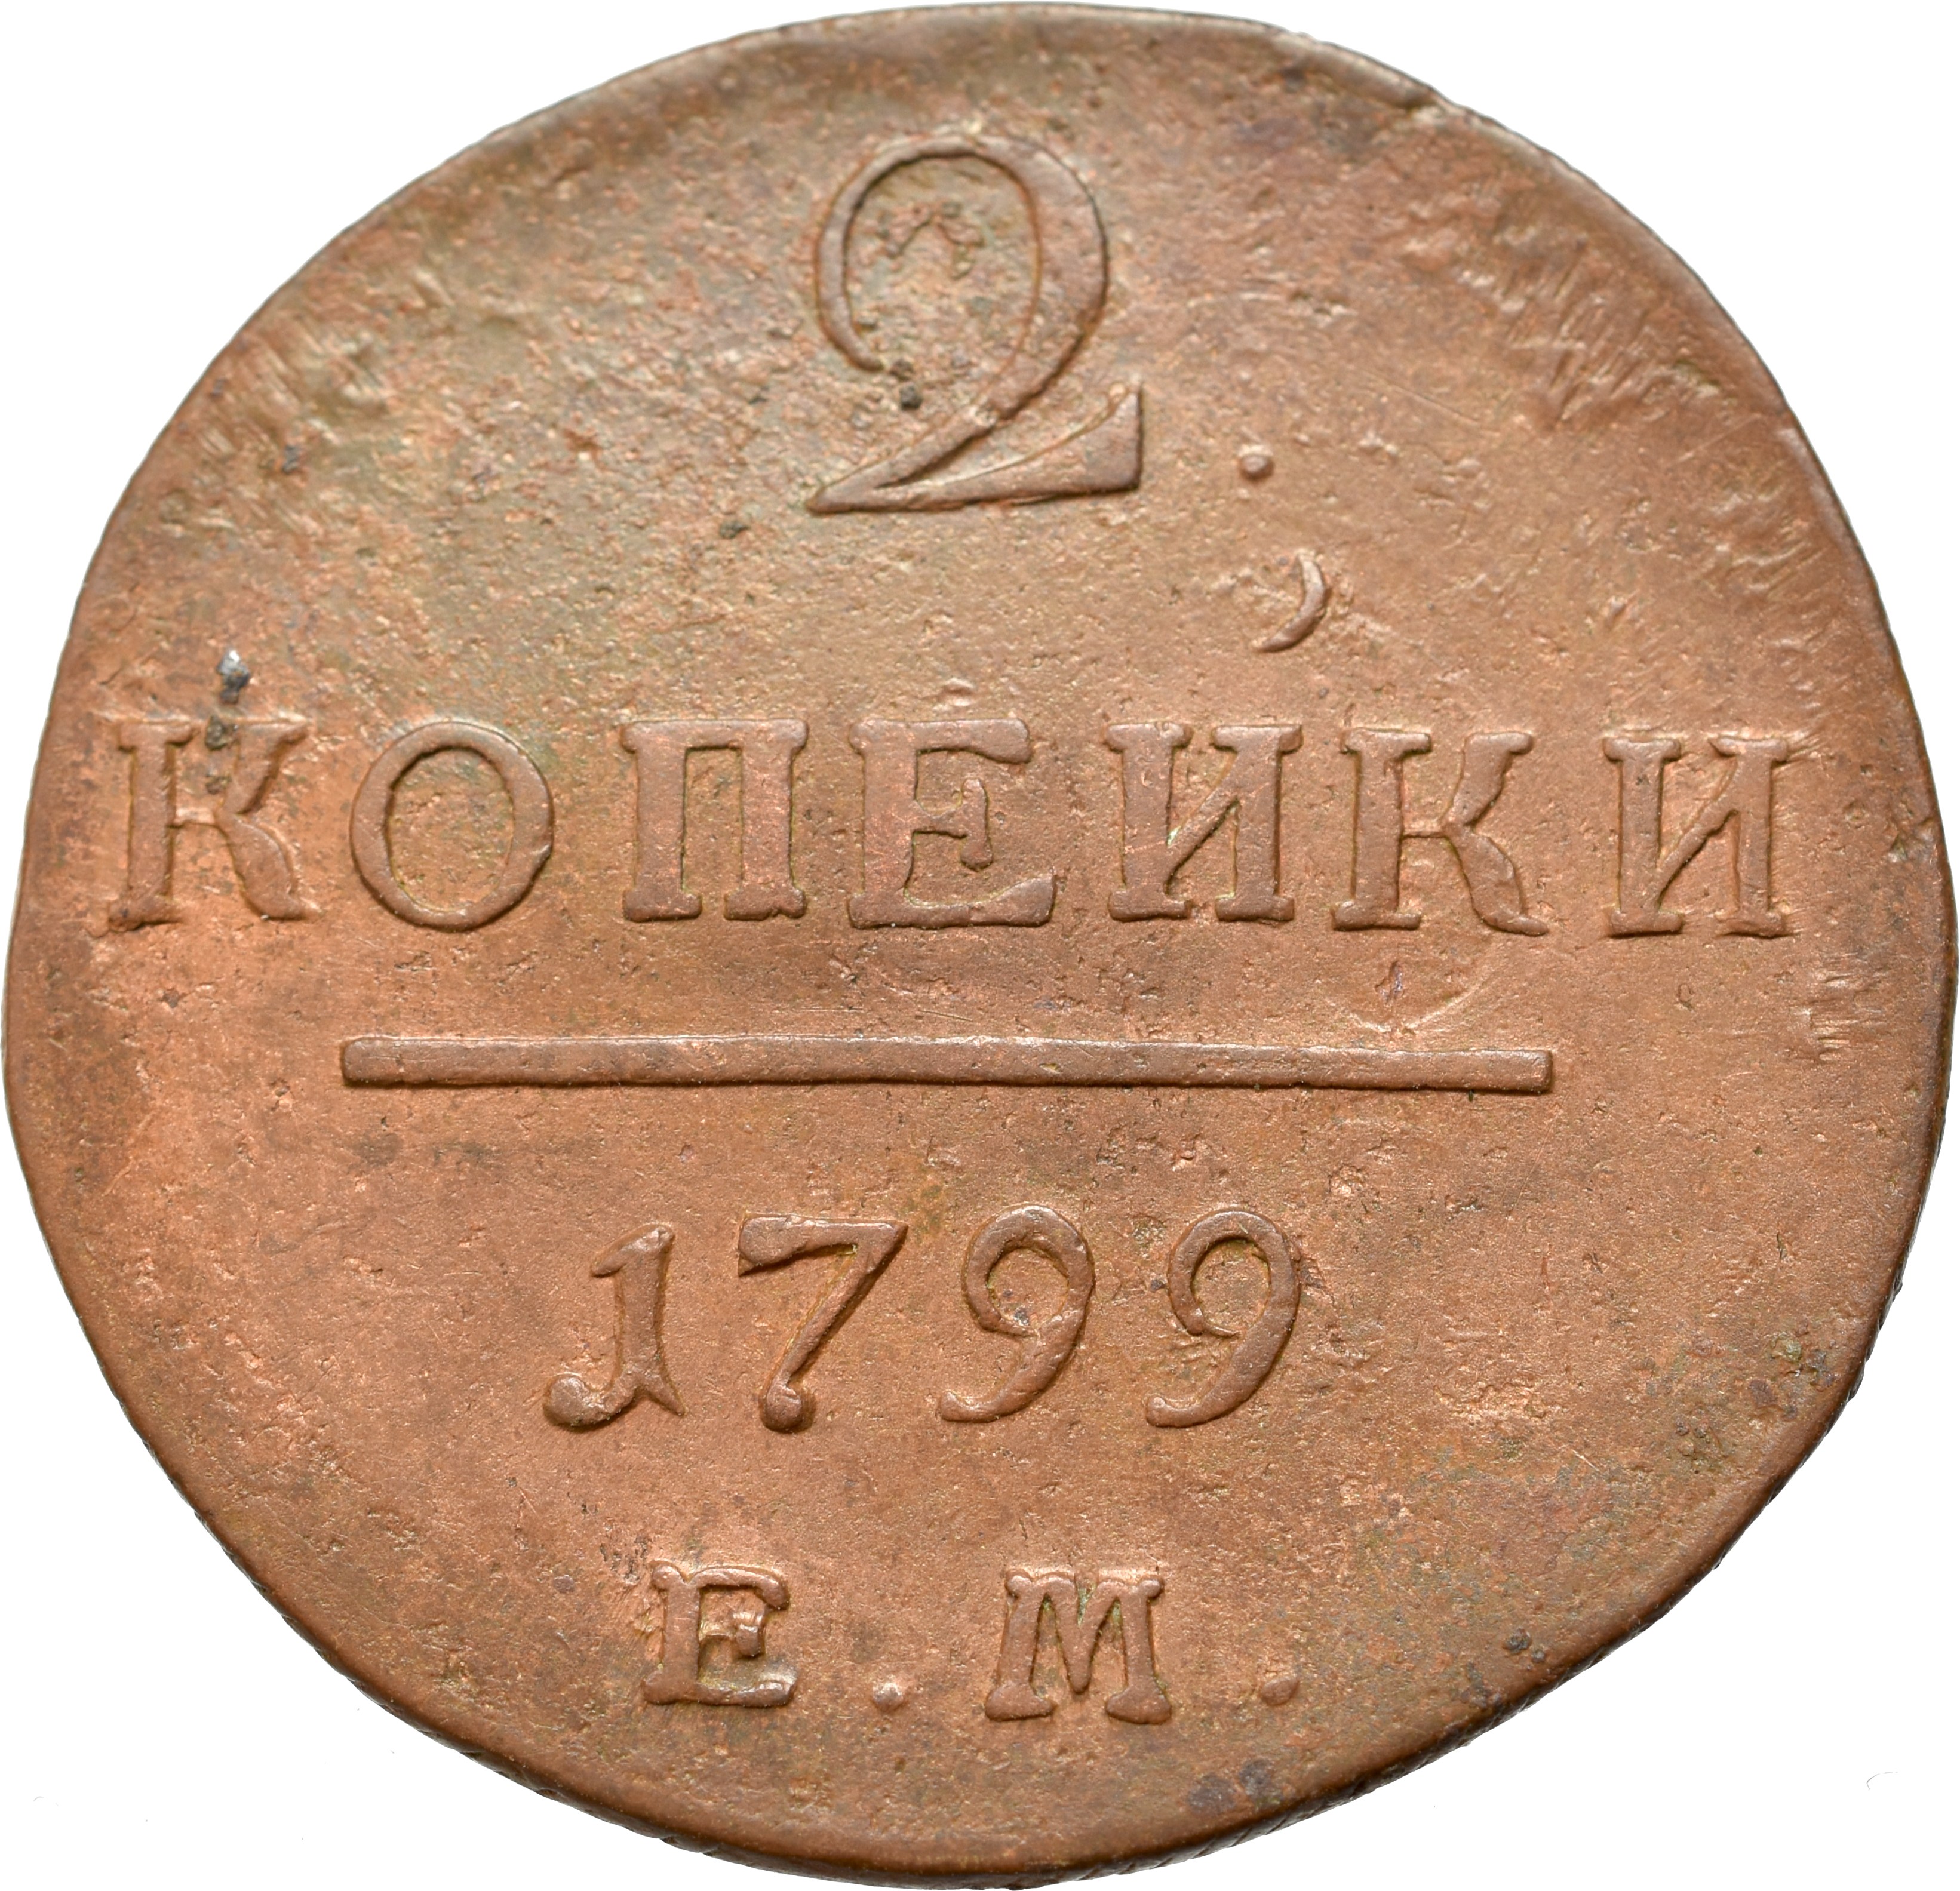 1 от 1800. Копейка Петра 1 1798. Монета России 1 копейка 1798 года. Монеты 1800.